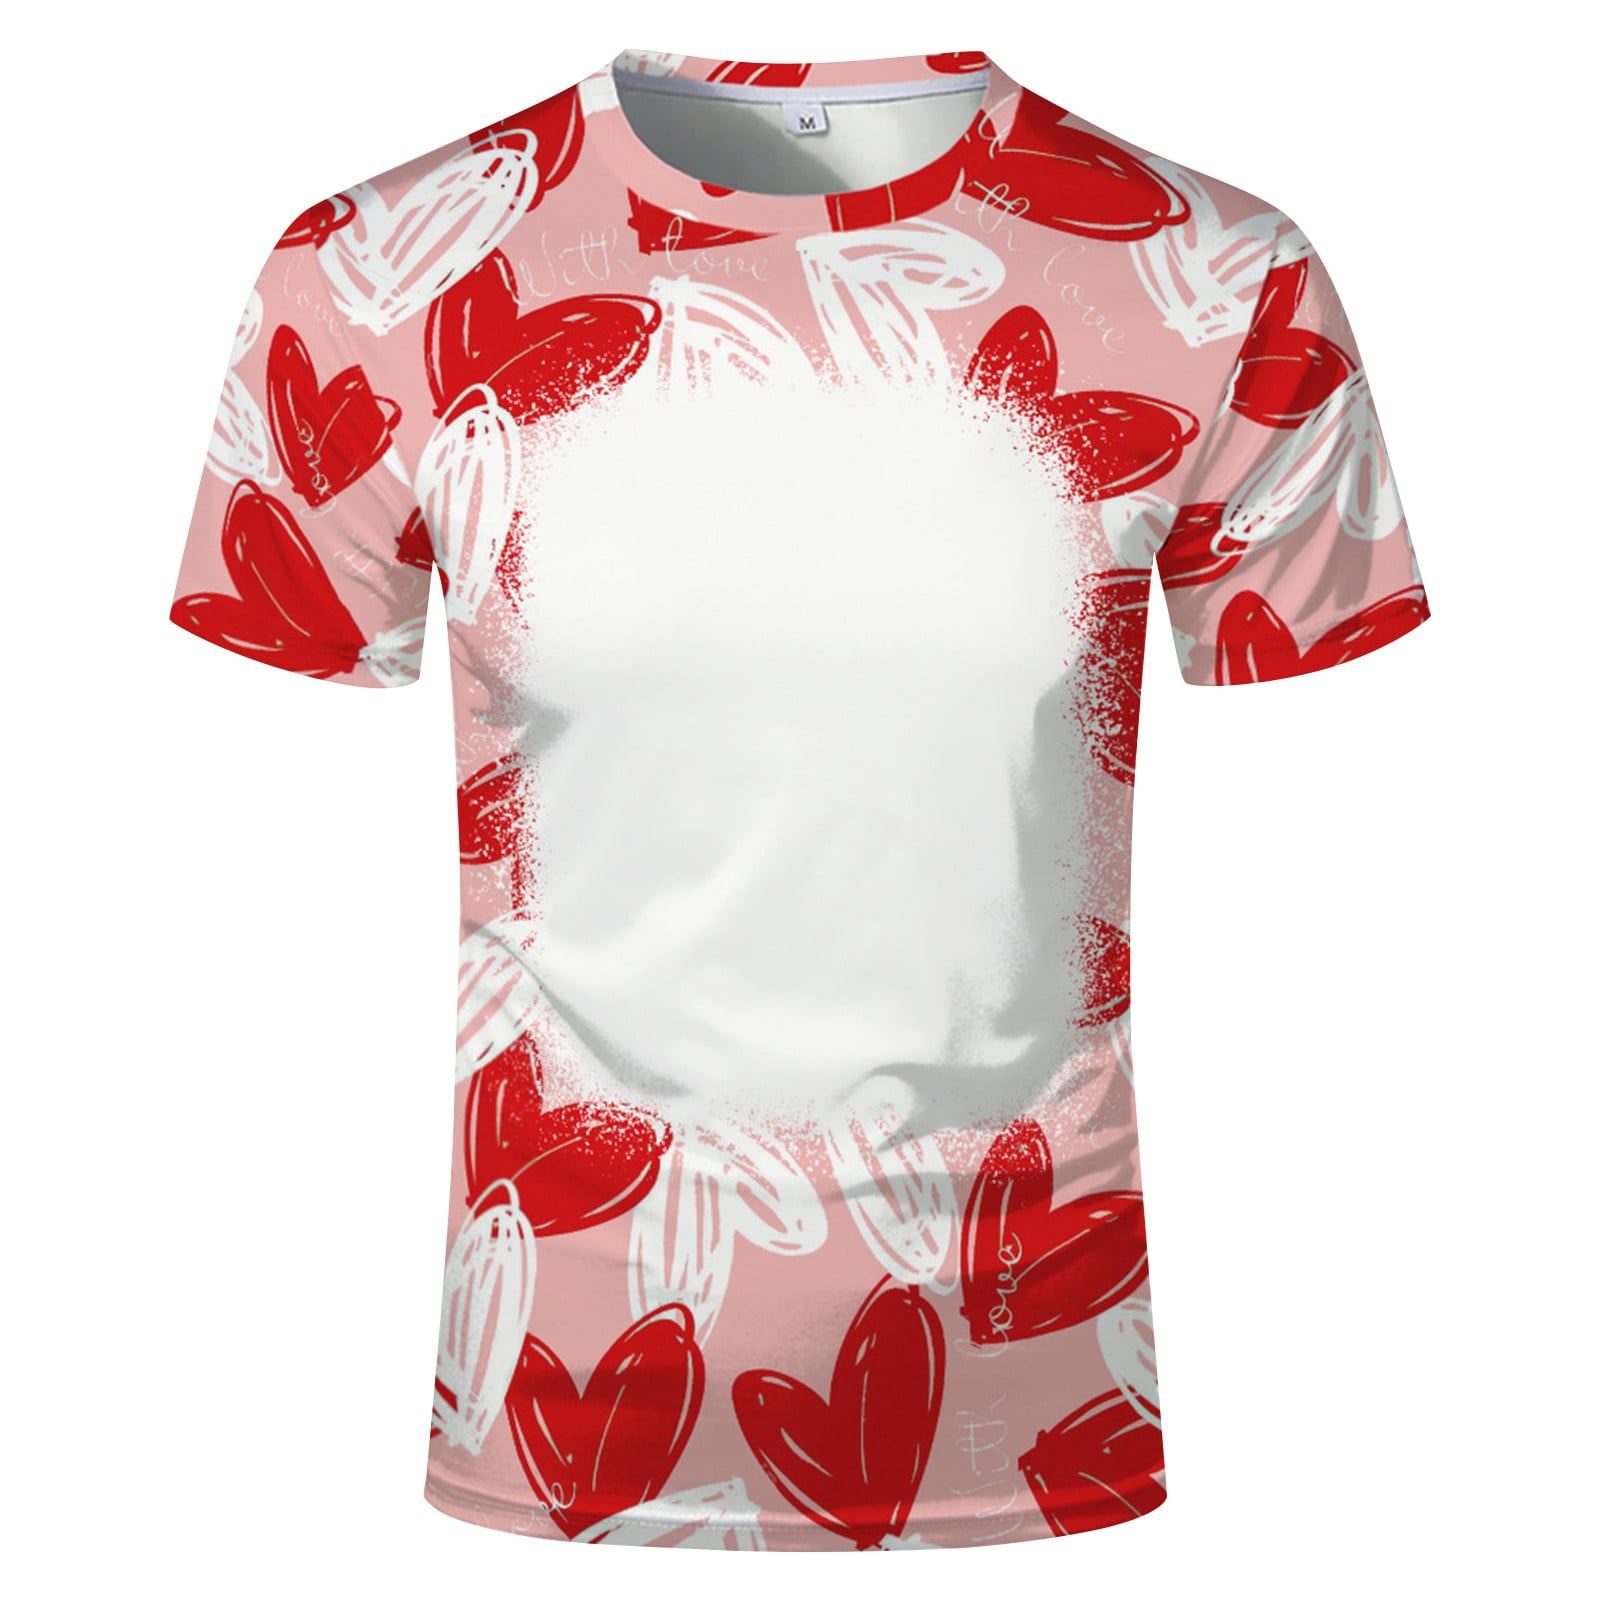 Ymosrh Men's Shirts US Size Large Blank Custom T-Shirt Heat Transfer  Sublimation Short Sleeve T-Shirts